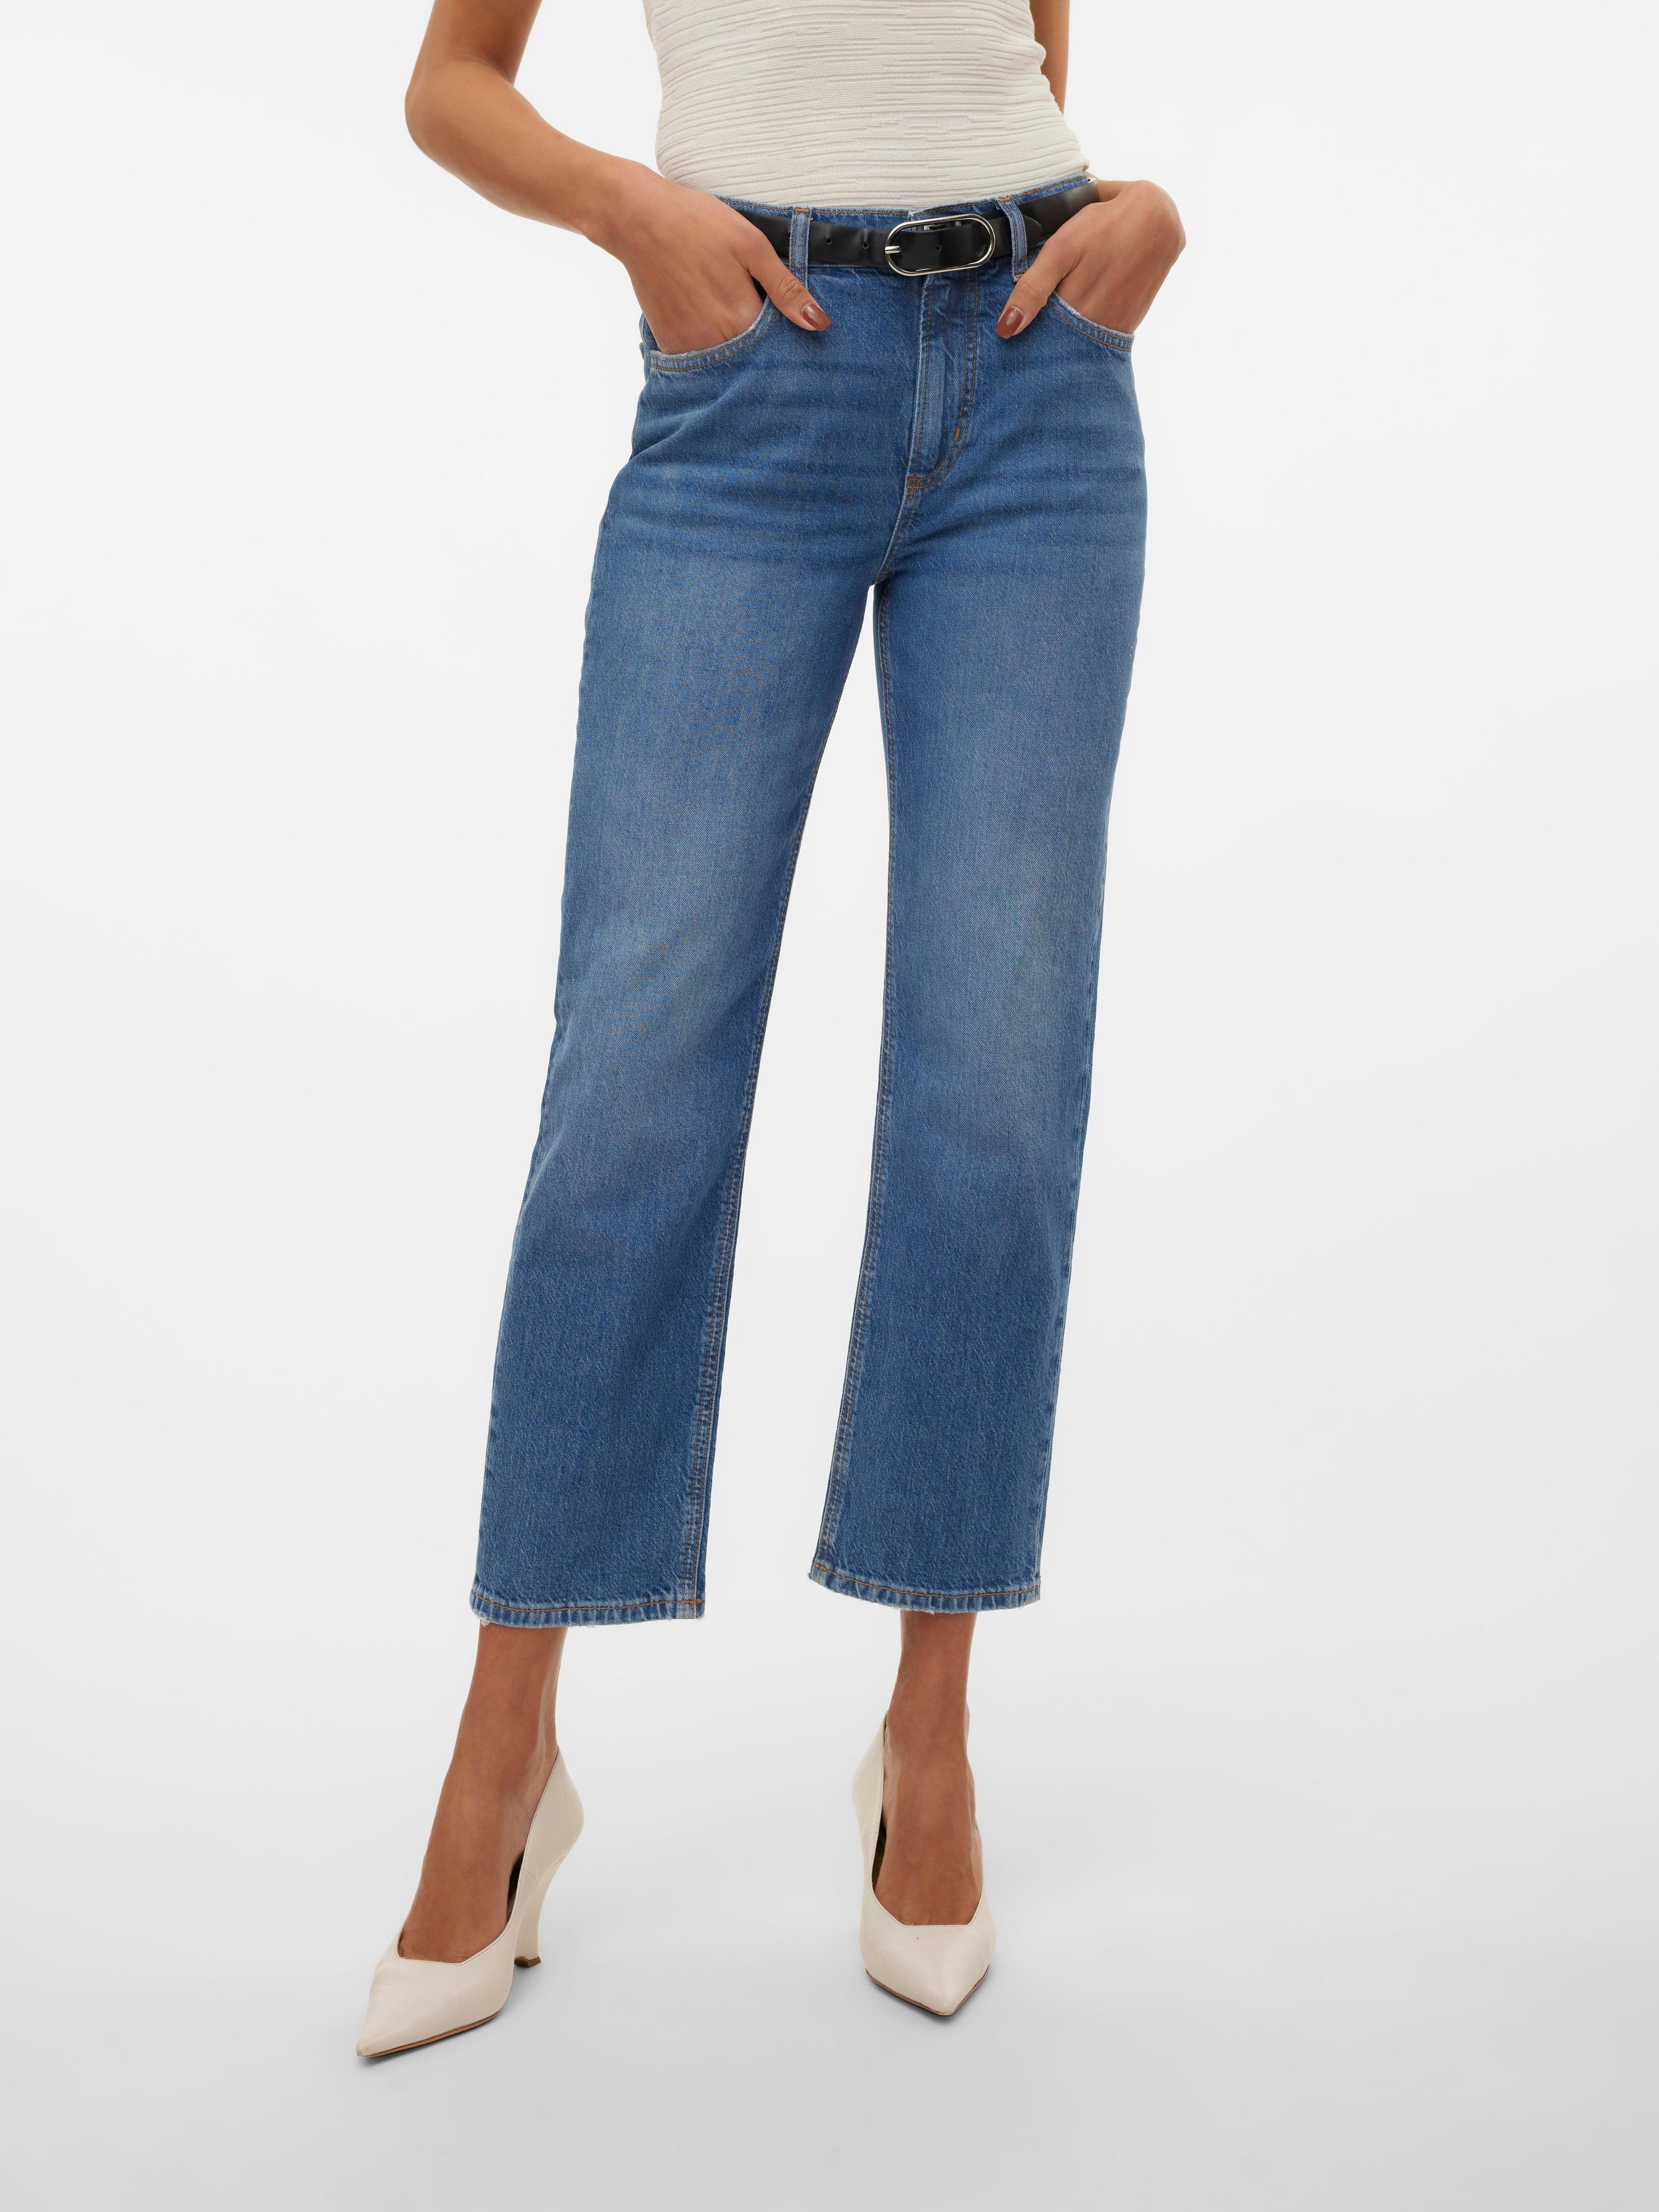 Vero Moda içinde 59,99 TL fiyatına VMELIA Gerade geschnitten Jeans fırsatı